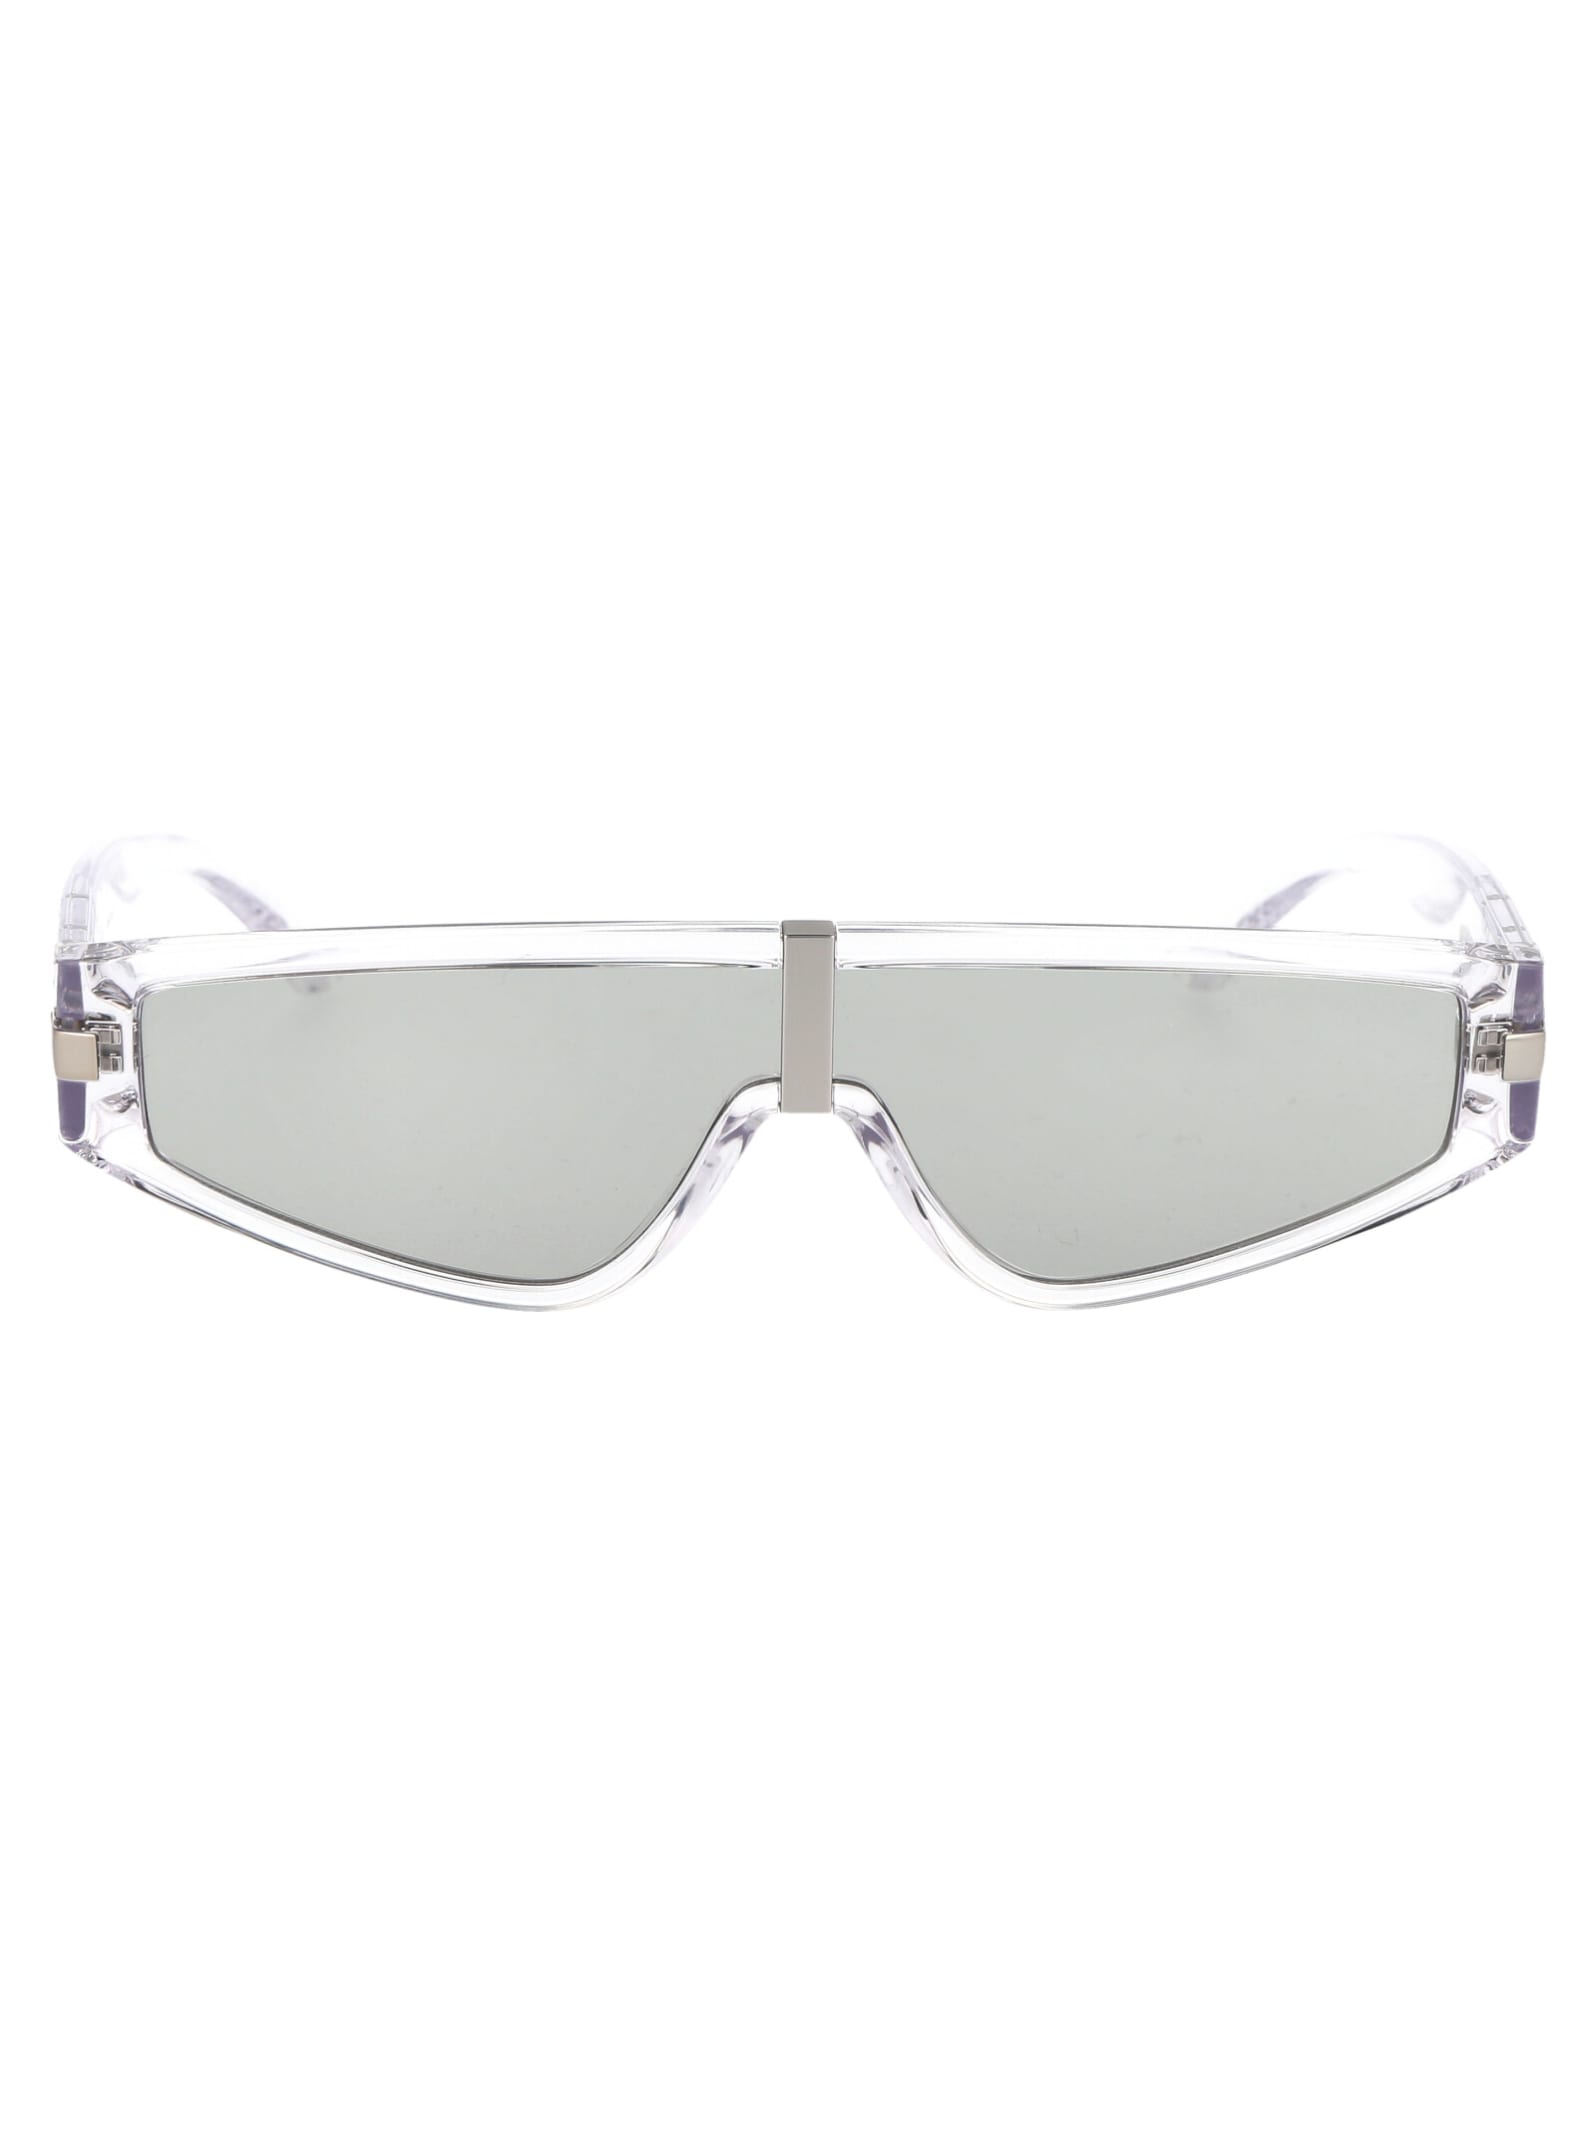 Emporio Armani 0ea4167 Sunglasses